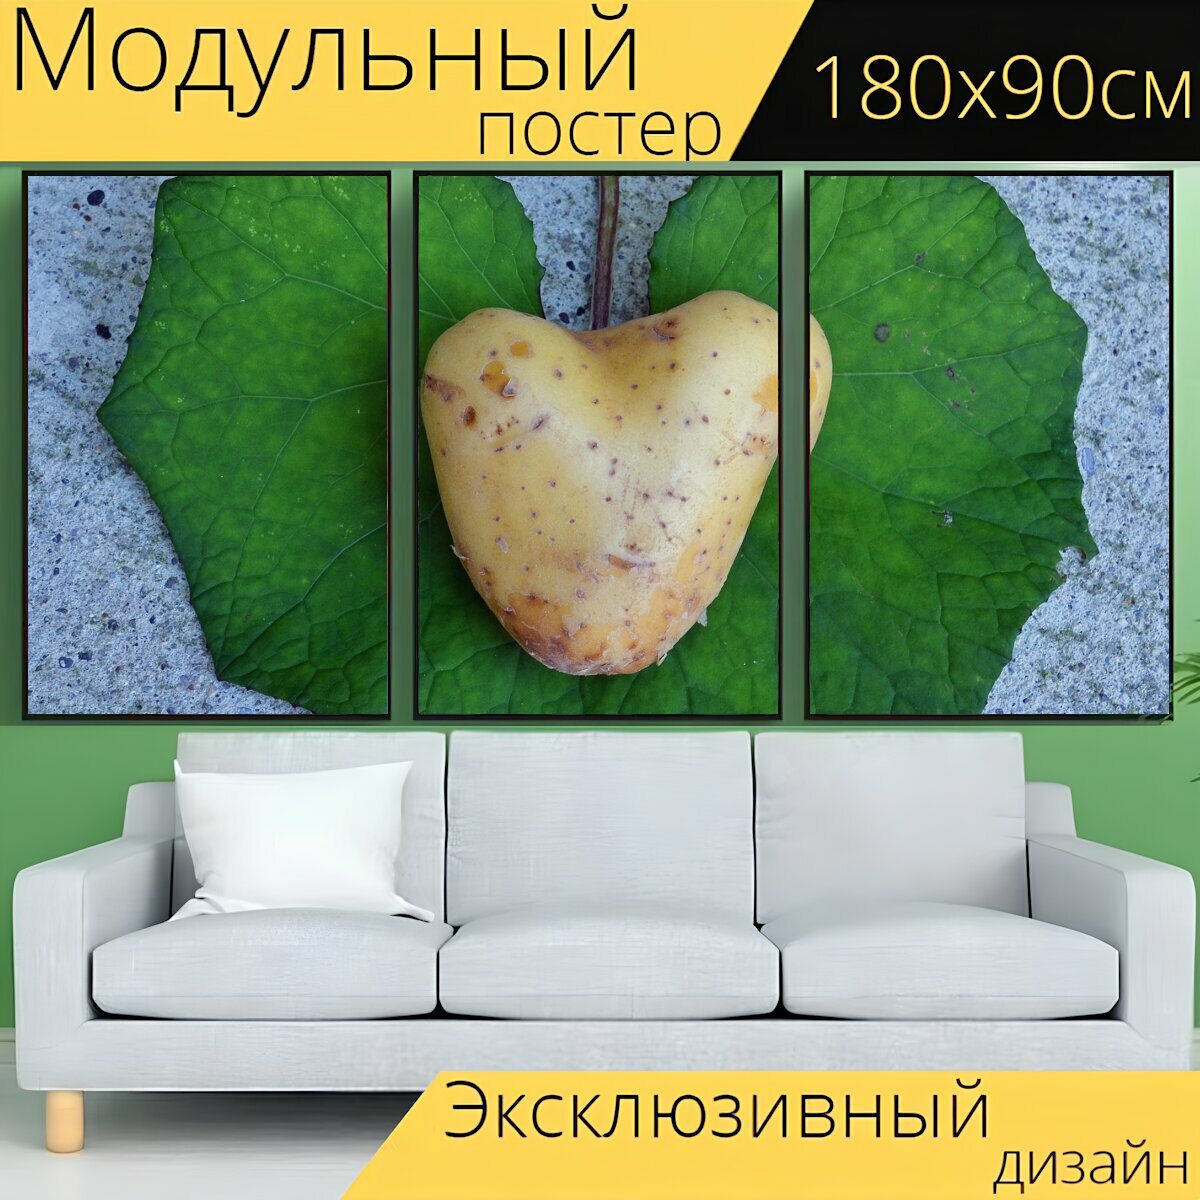 Модульный постер "Сердце, картошка, любовь" 180 x 90 см. для интерьера